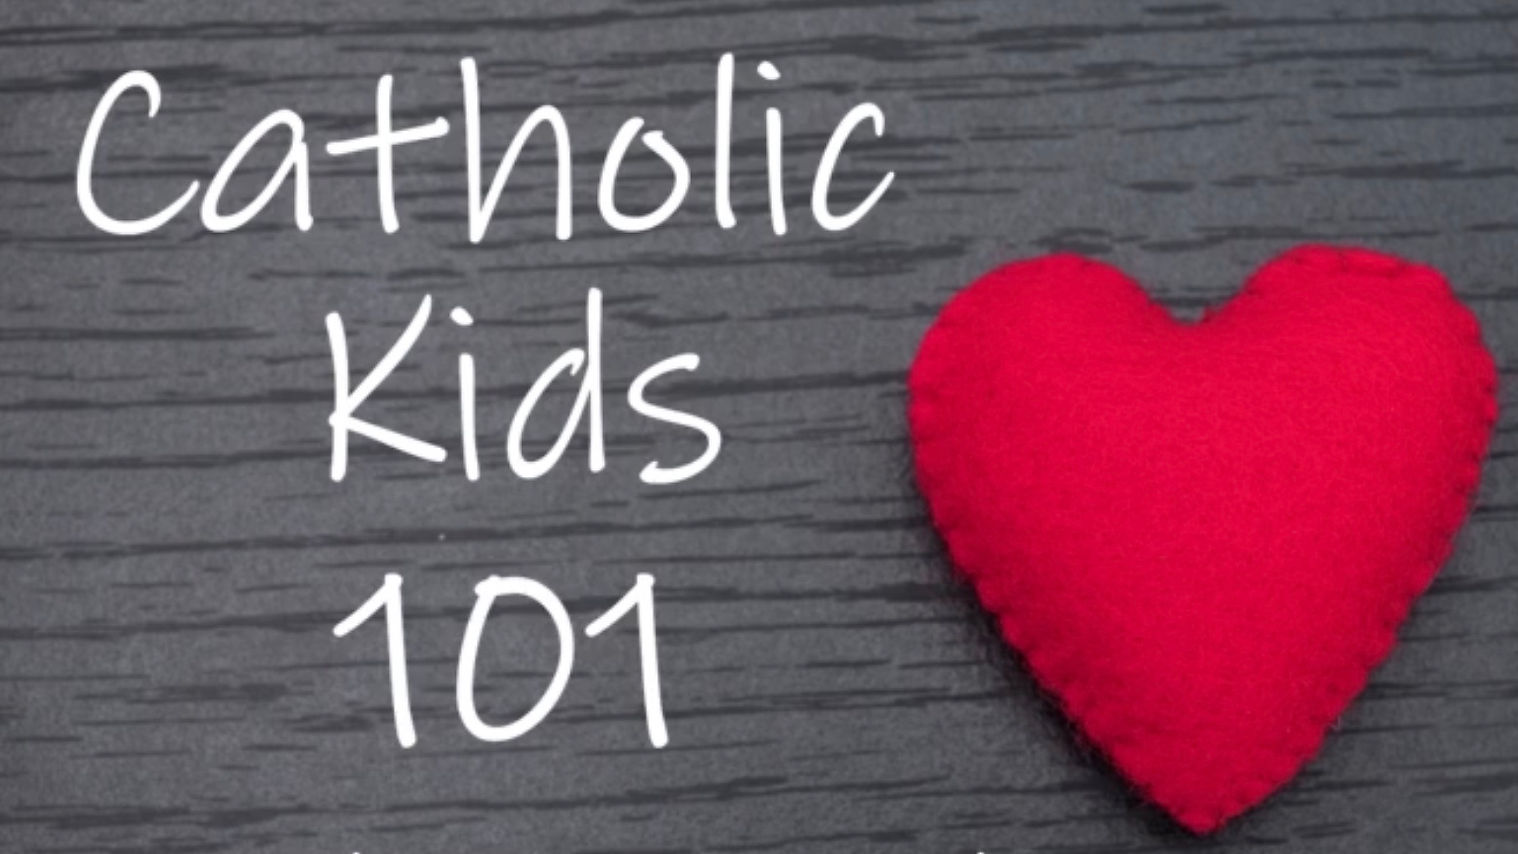 Catholic Kids 101